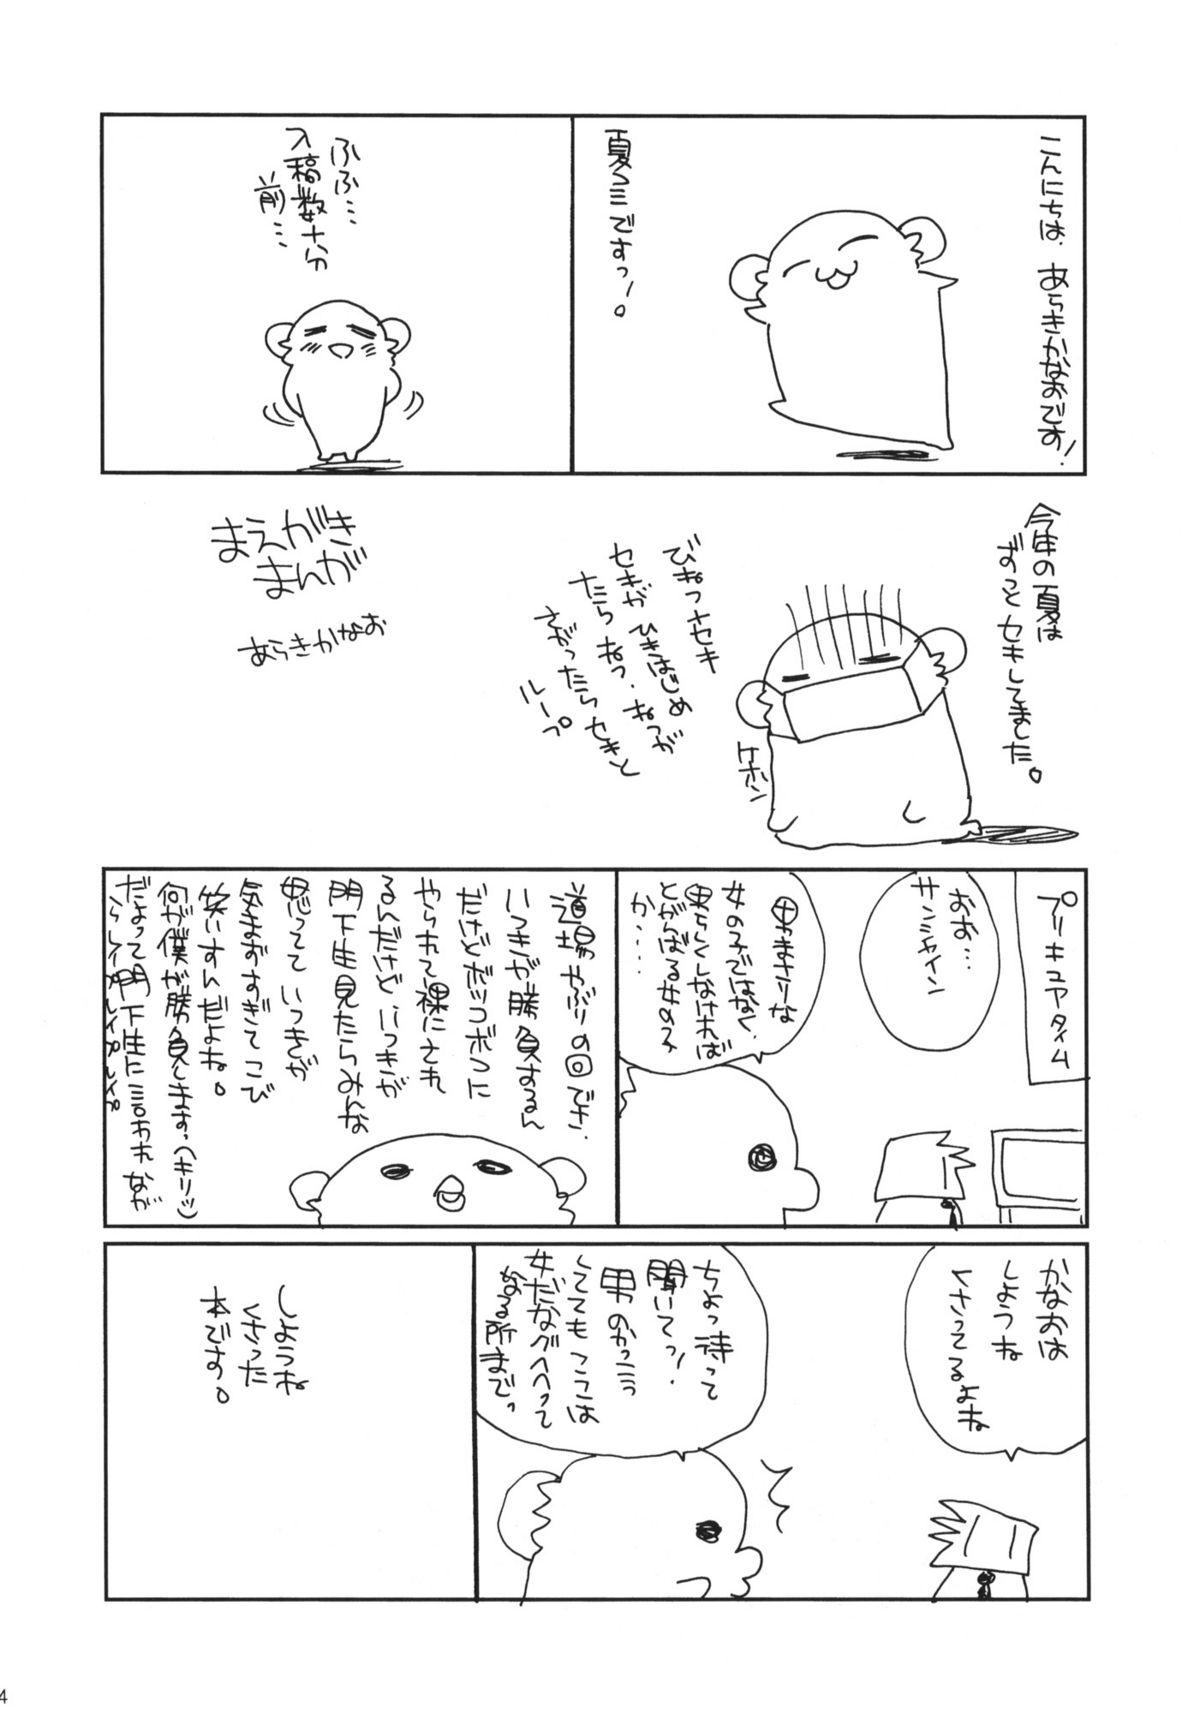 Camshow HAPPY EDEN CUTE - Hayate no gotoku Bokep - Page 3